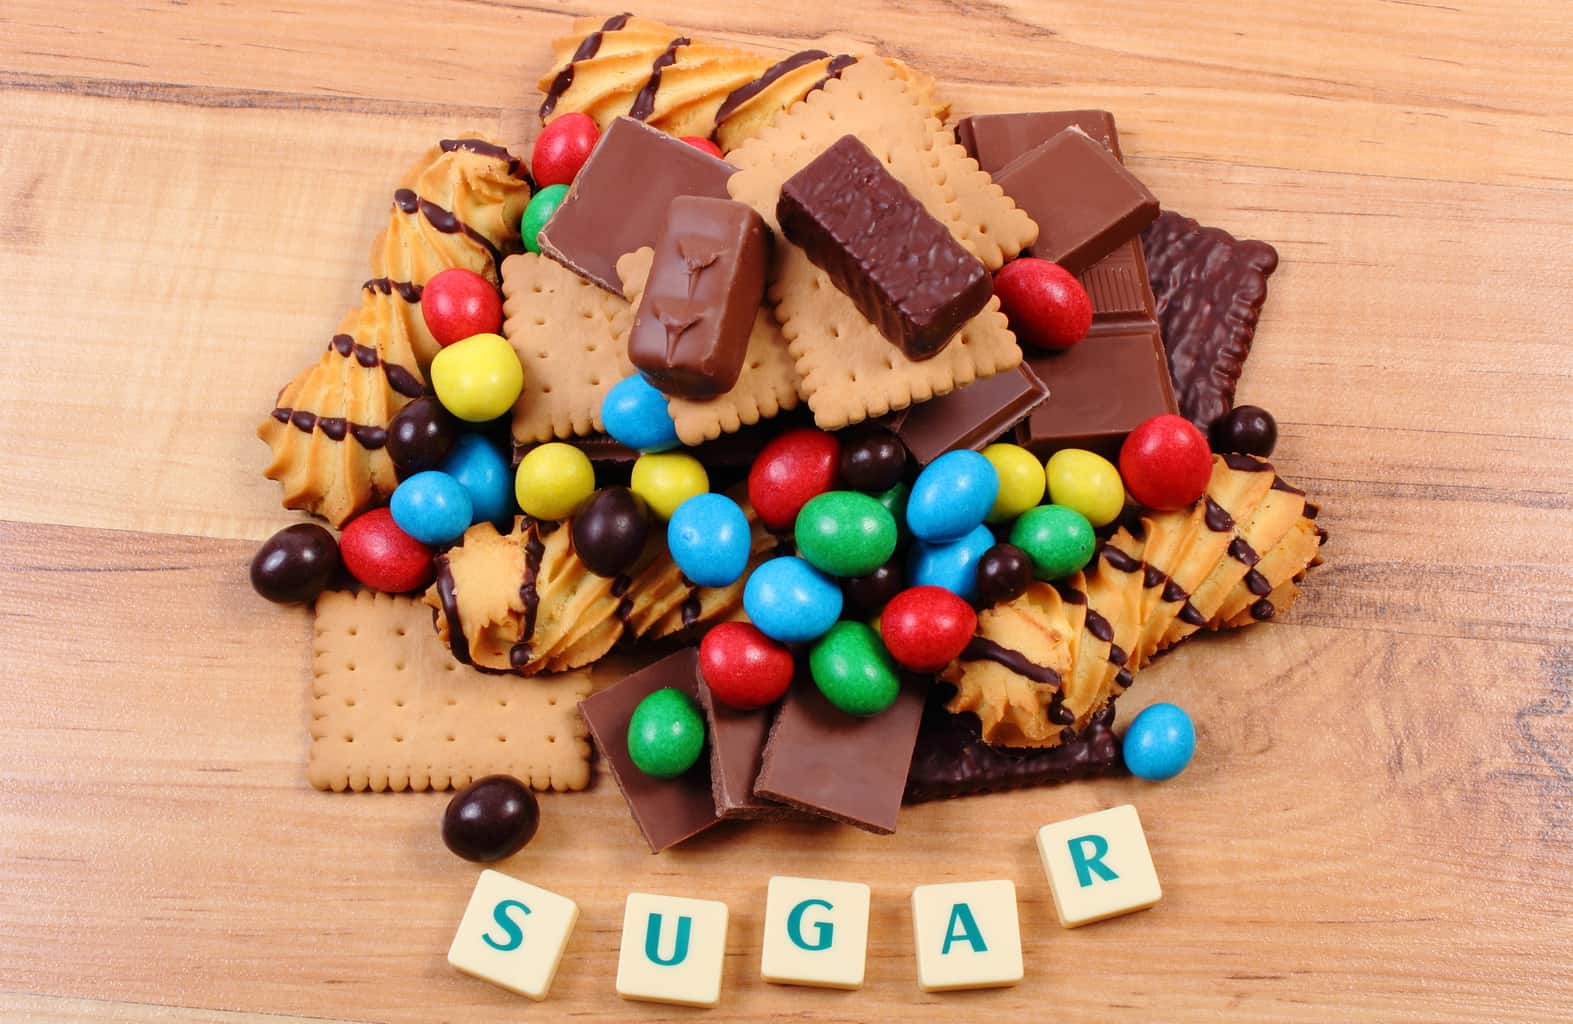 World’s oldest man’s secret: “sugar-thin”